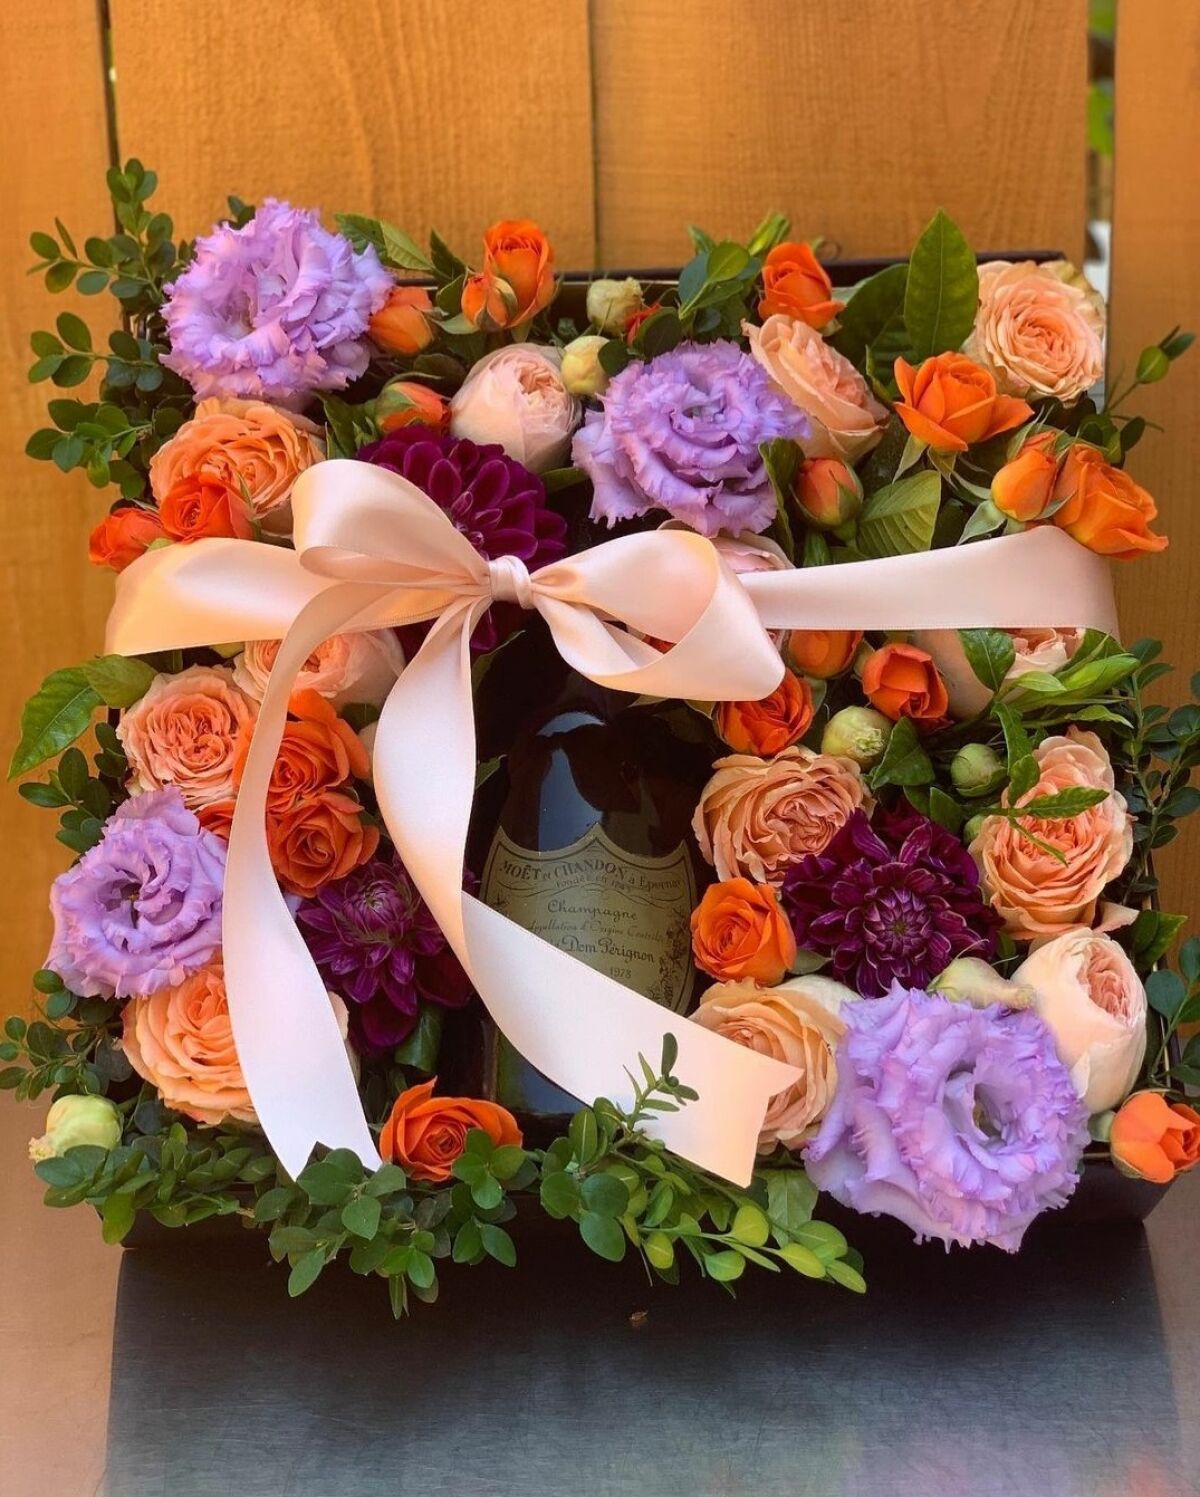 This arrangement by La Jolla Florist has a surprise inside.